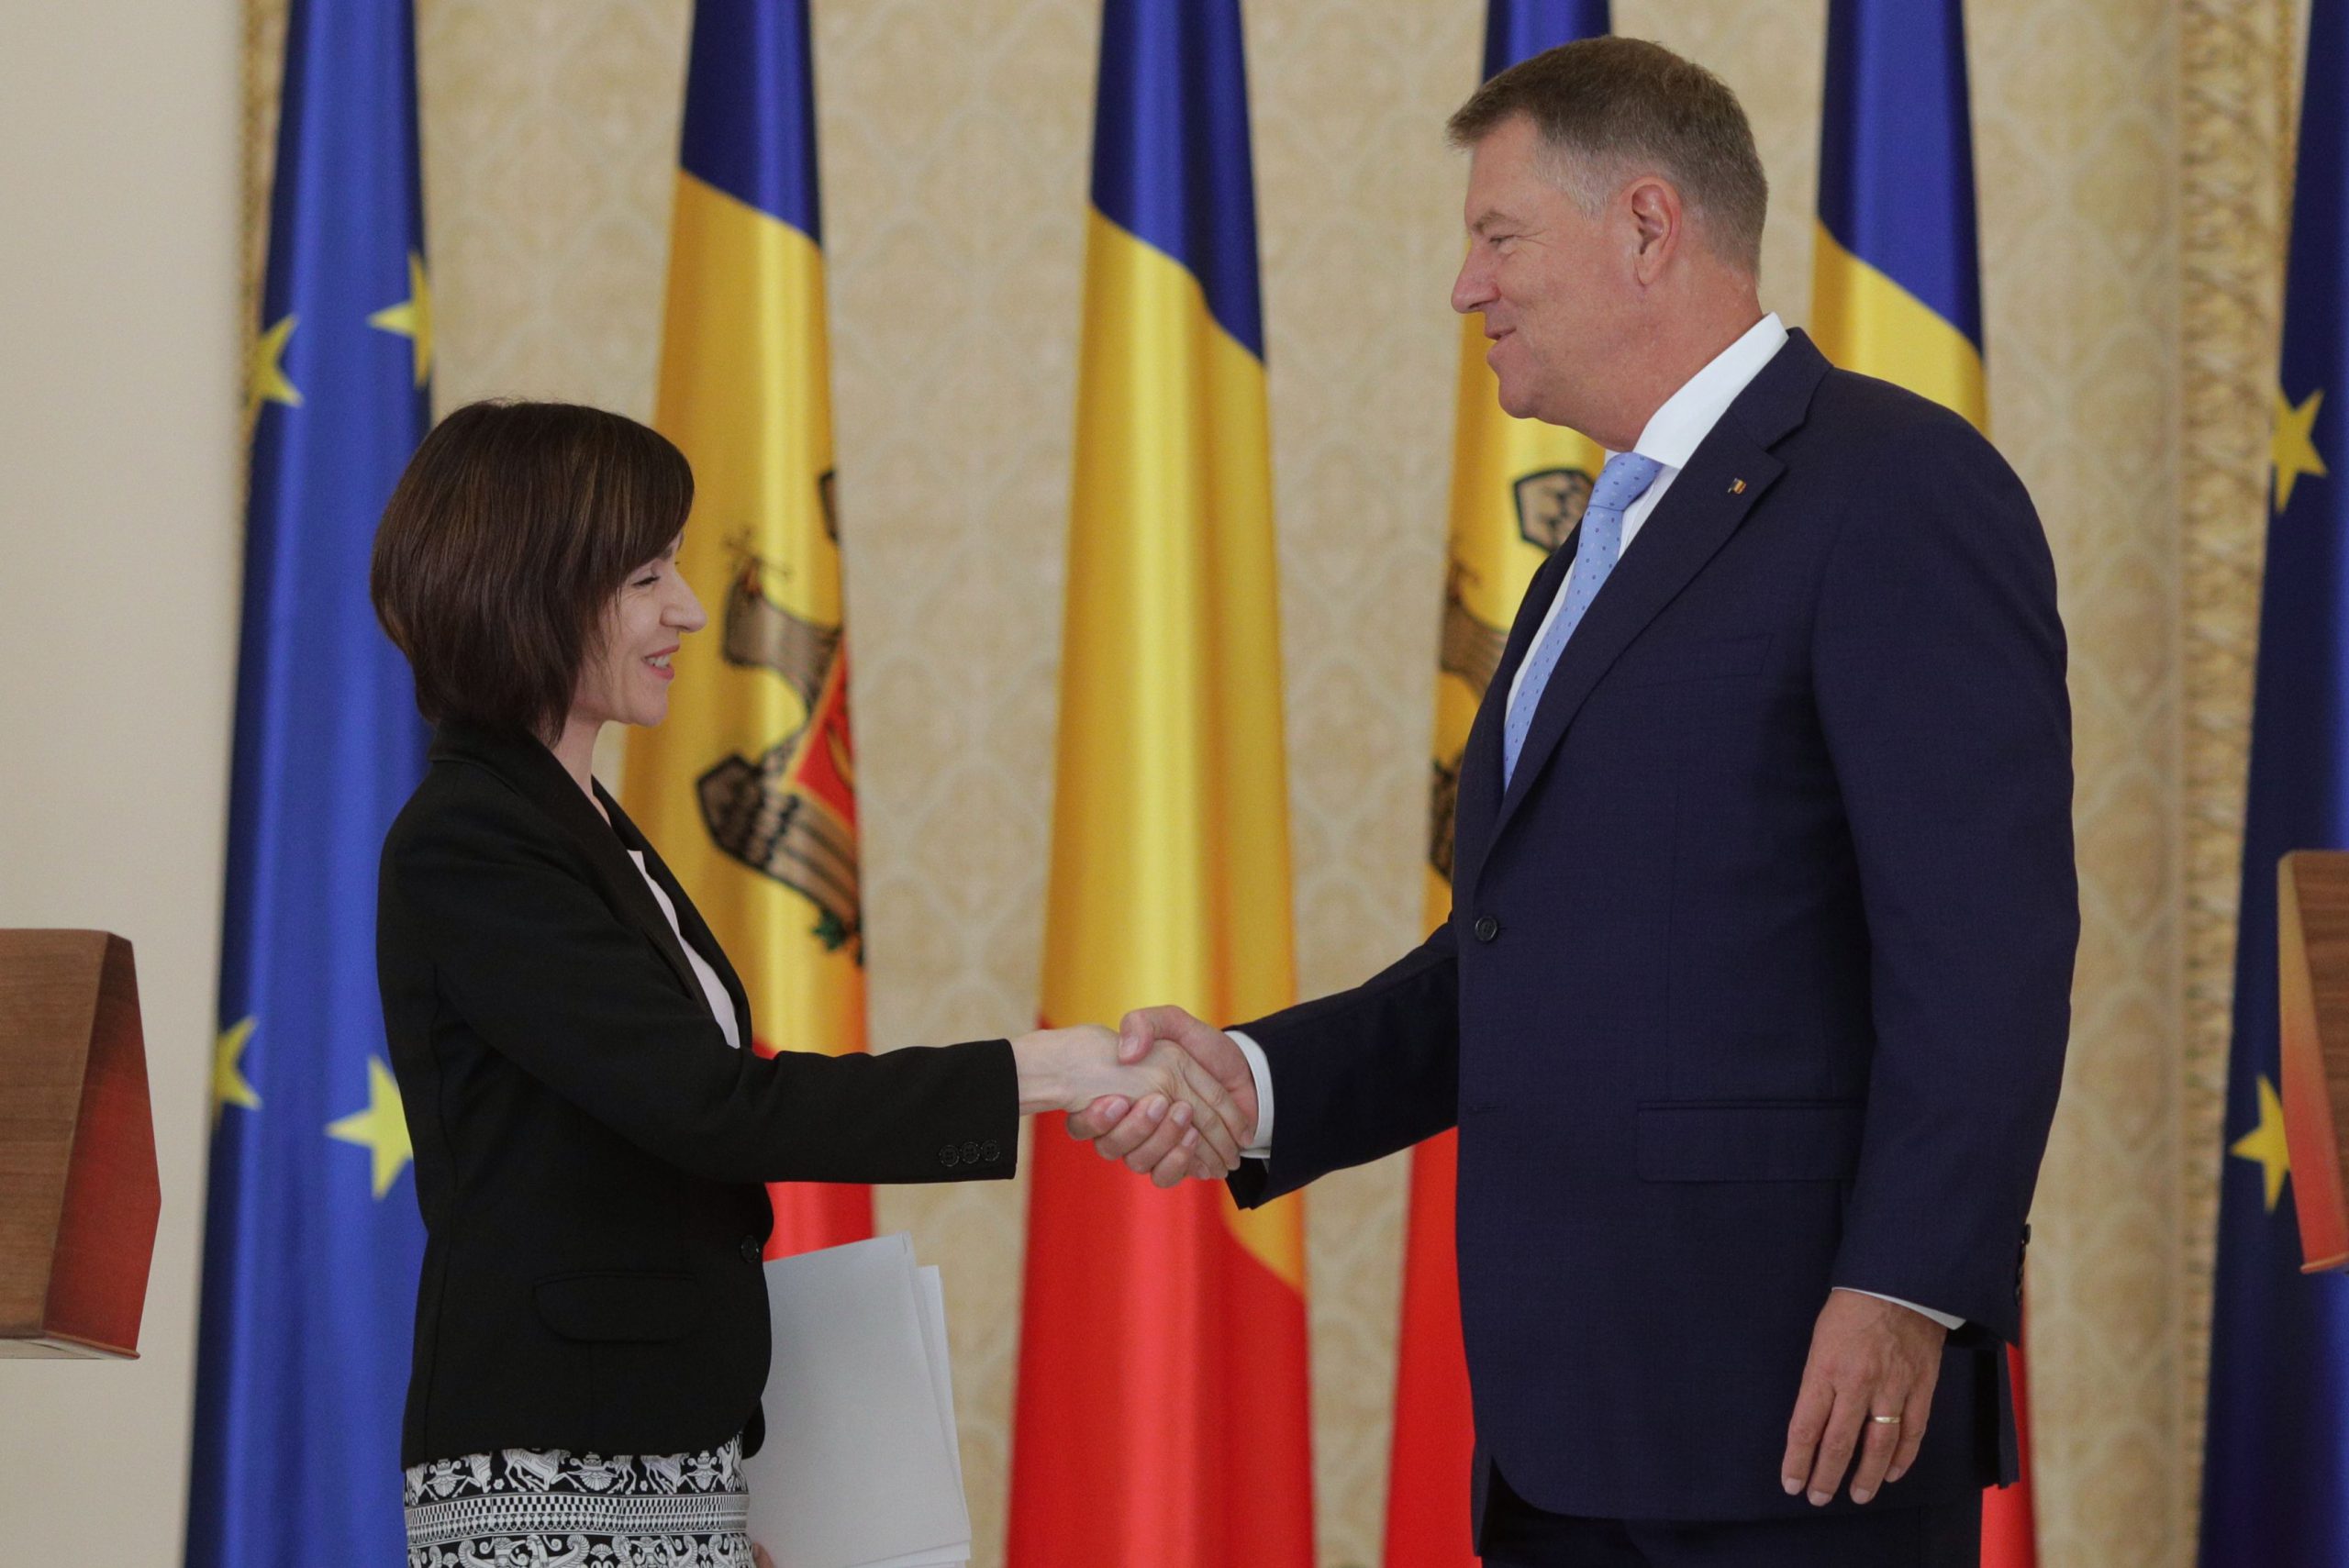 Premierul Moldovei, Maia Sandu, se intalneste cu Klaus Iohannis la Cotroceni, in Bucuresti, marti 2 iulie 2019. Inquam Photos / Octav Ganea